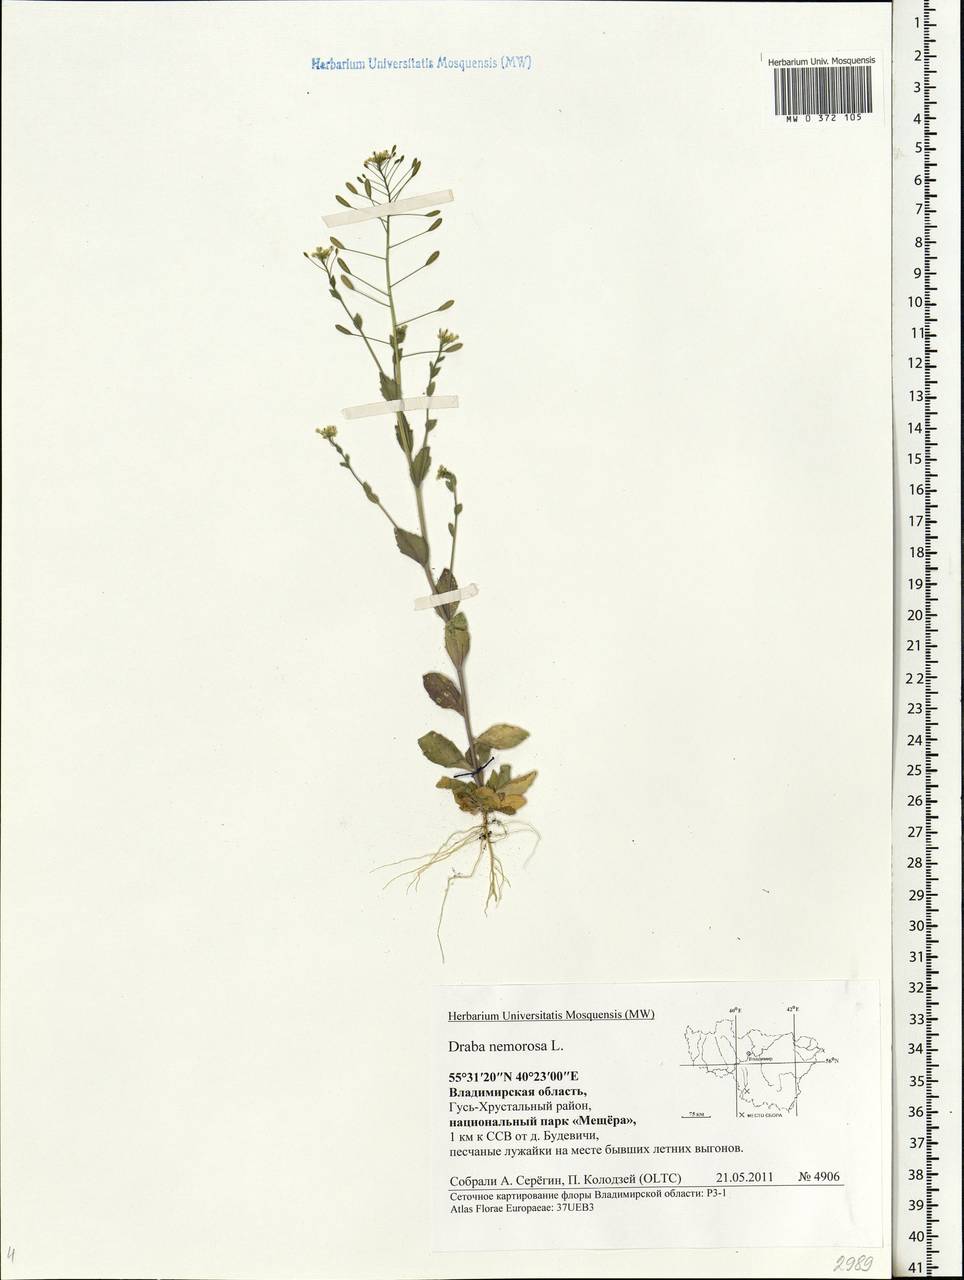 Draba nemorosa L., Eastern Europe, Central region (E4) (Russia)